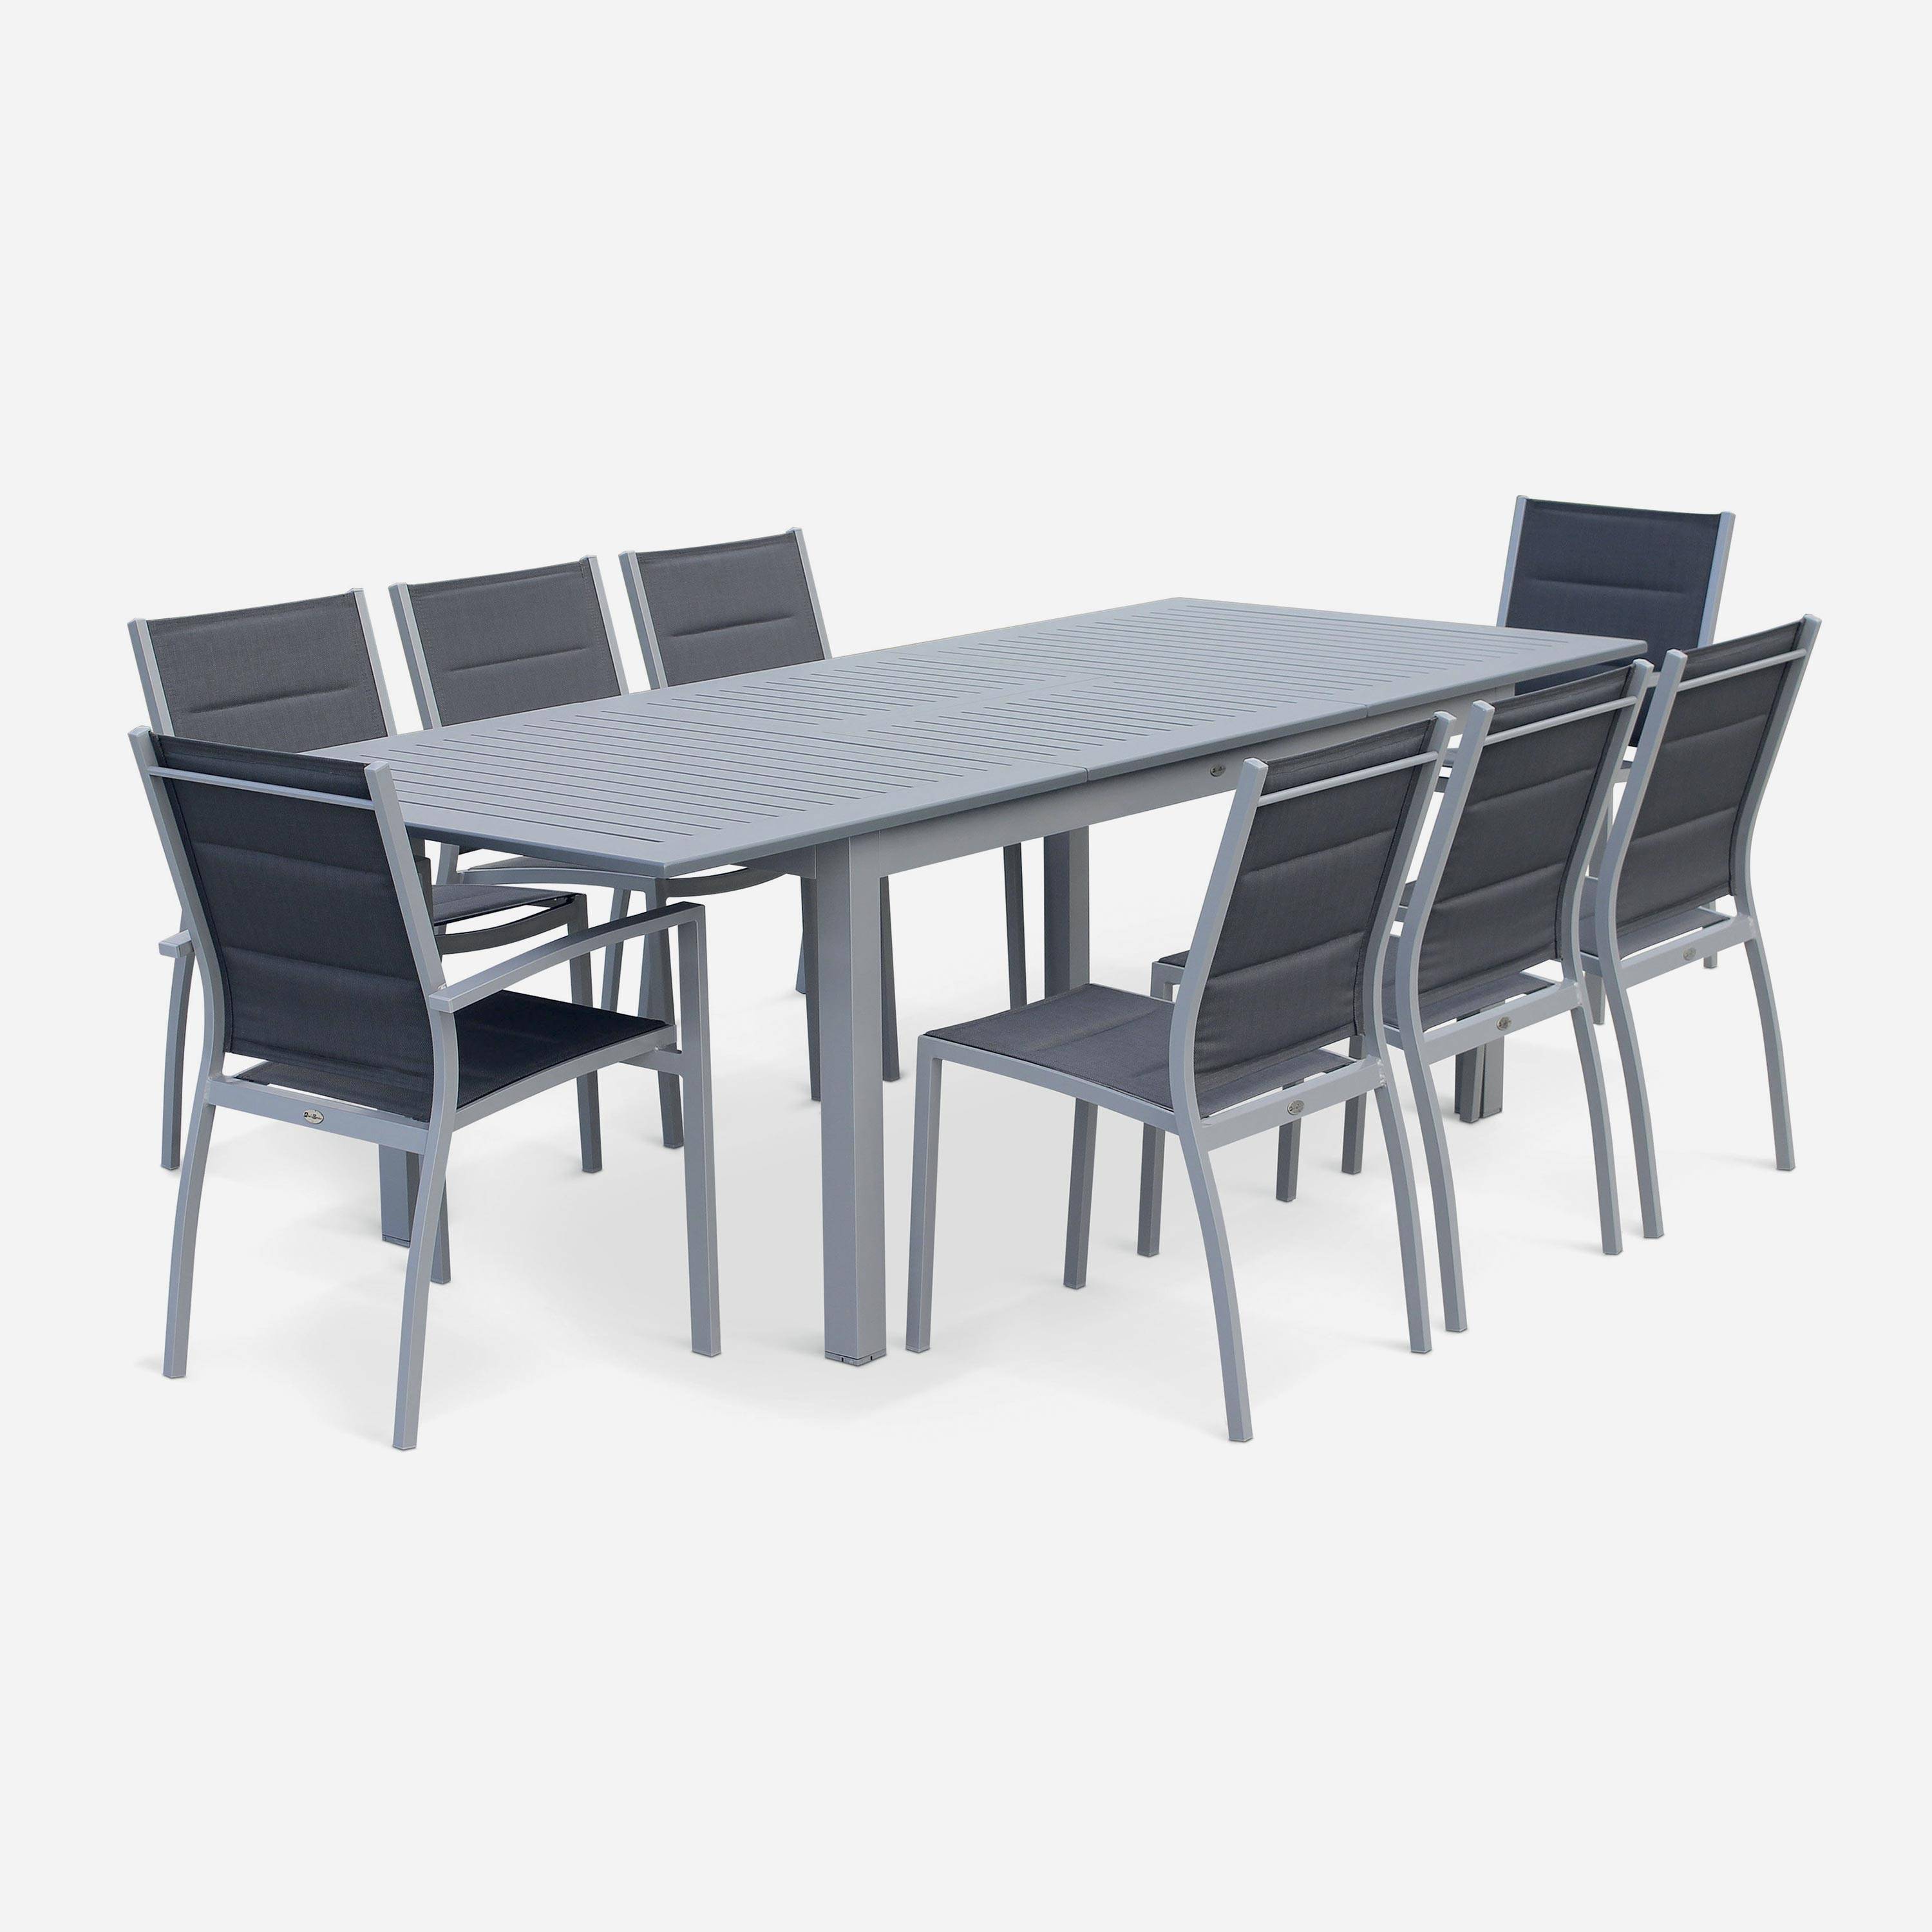 Ausziehbarer Tisch Gartengarnitur - Chicago Grau - Aluminiumtisch 175/245 cm mit Verlängerung und 2 Sessel miy Armlehnen und 6 Stühle ohne Armlehnen aus Textilene Photo2